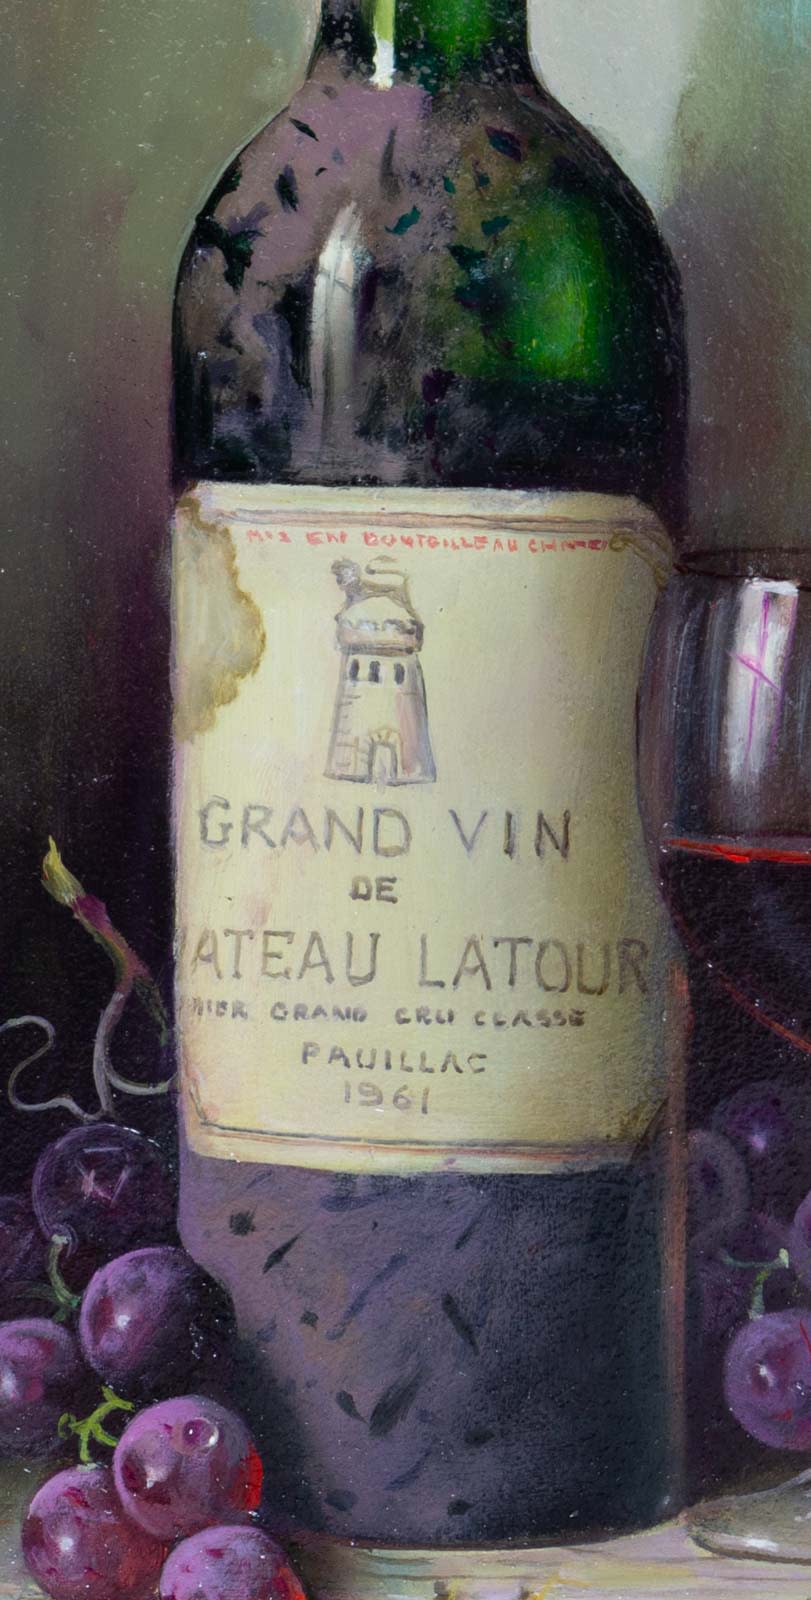 Chateau Latour 1961